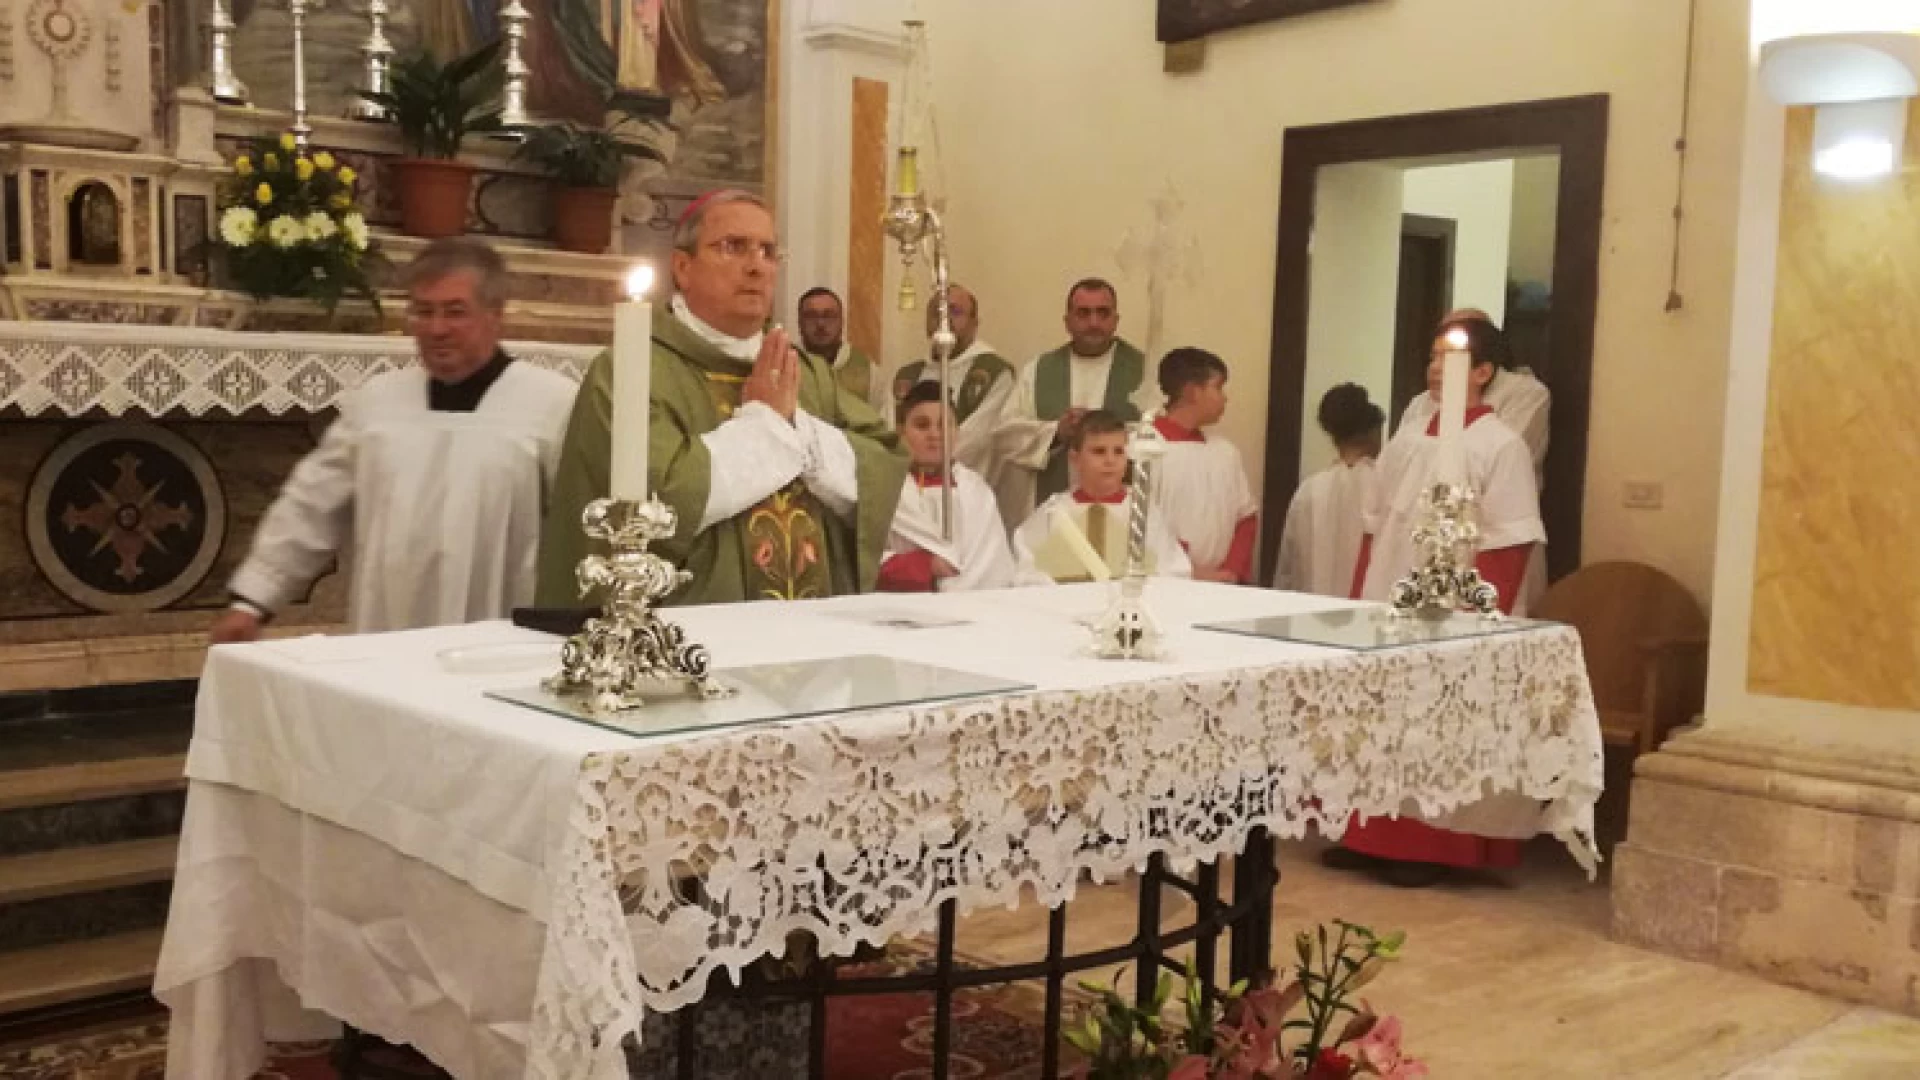 Colli a Volturno: la comunità di fedeli ha accolto il nuovo parroco Don Vincenzo Frino. Il servizio video della cerimonia ufficiale a cura della nostra redazione.